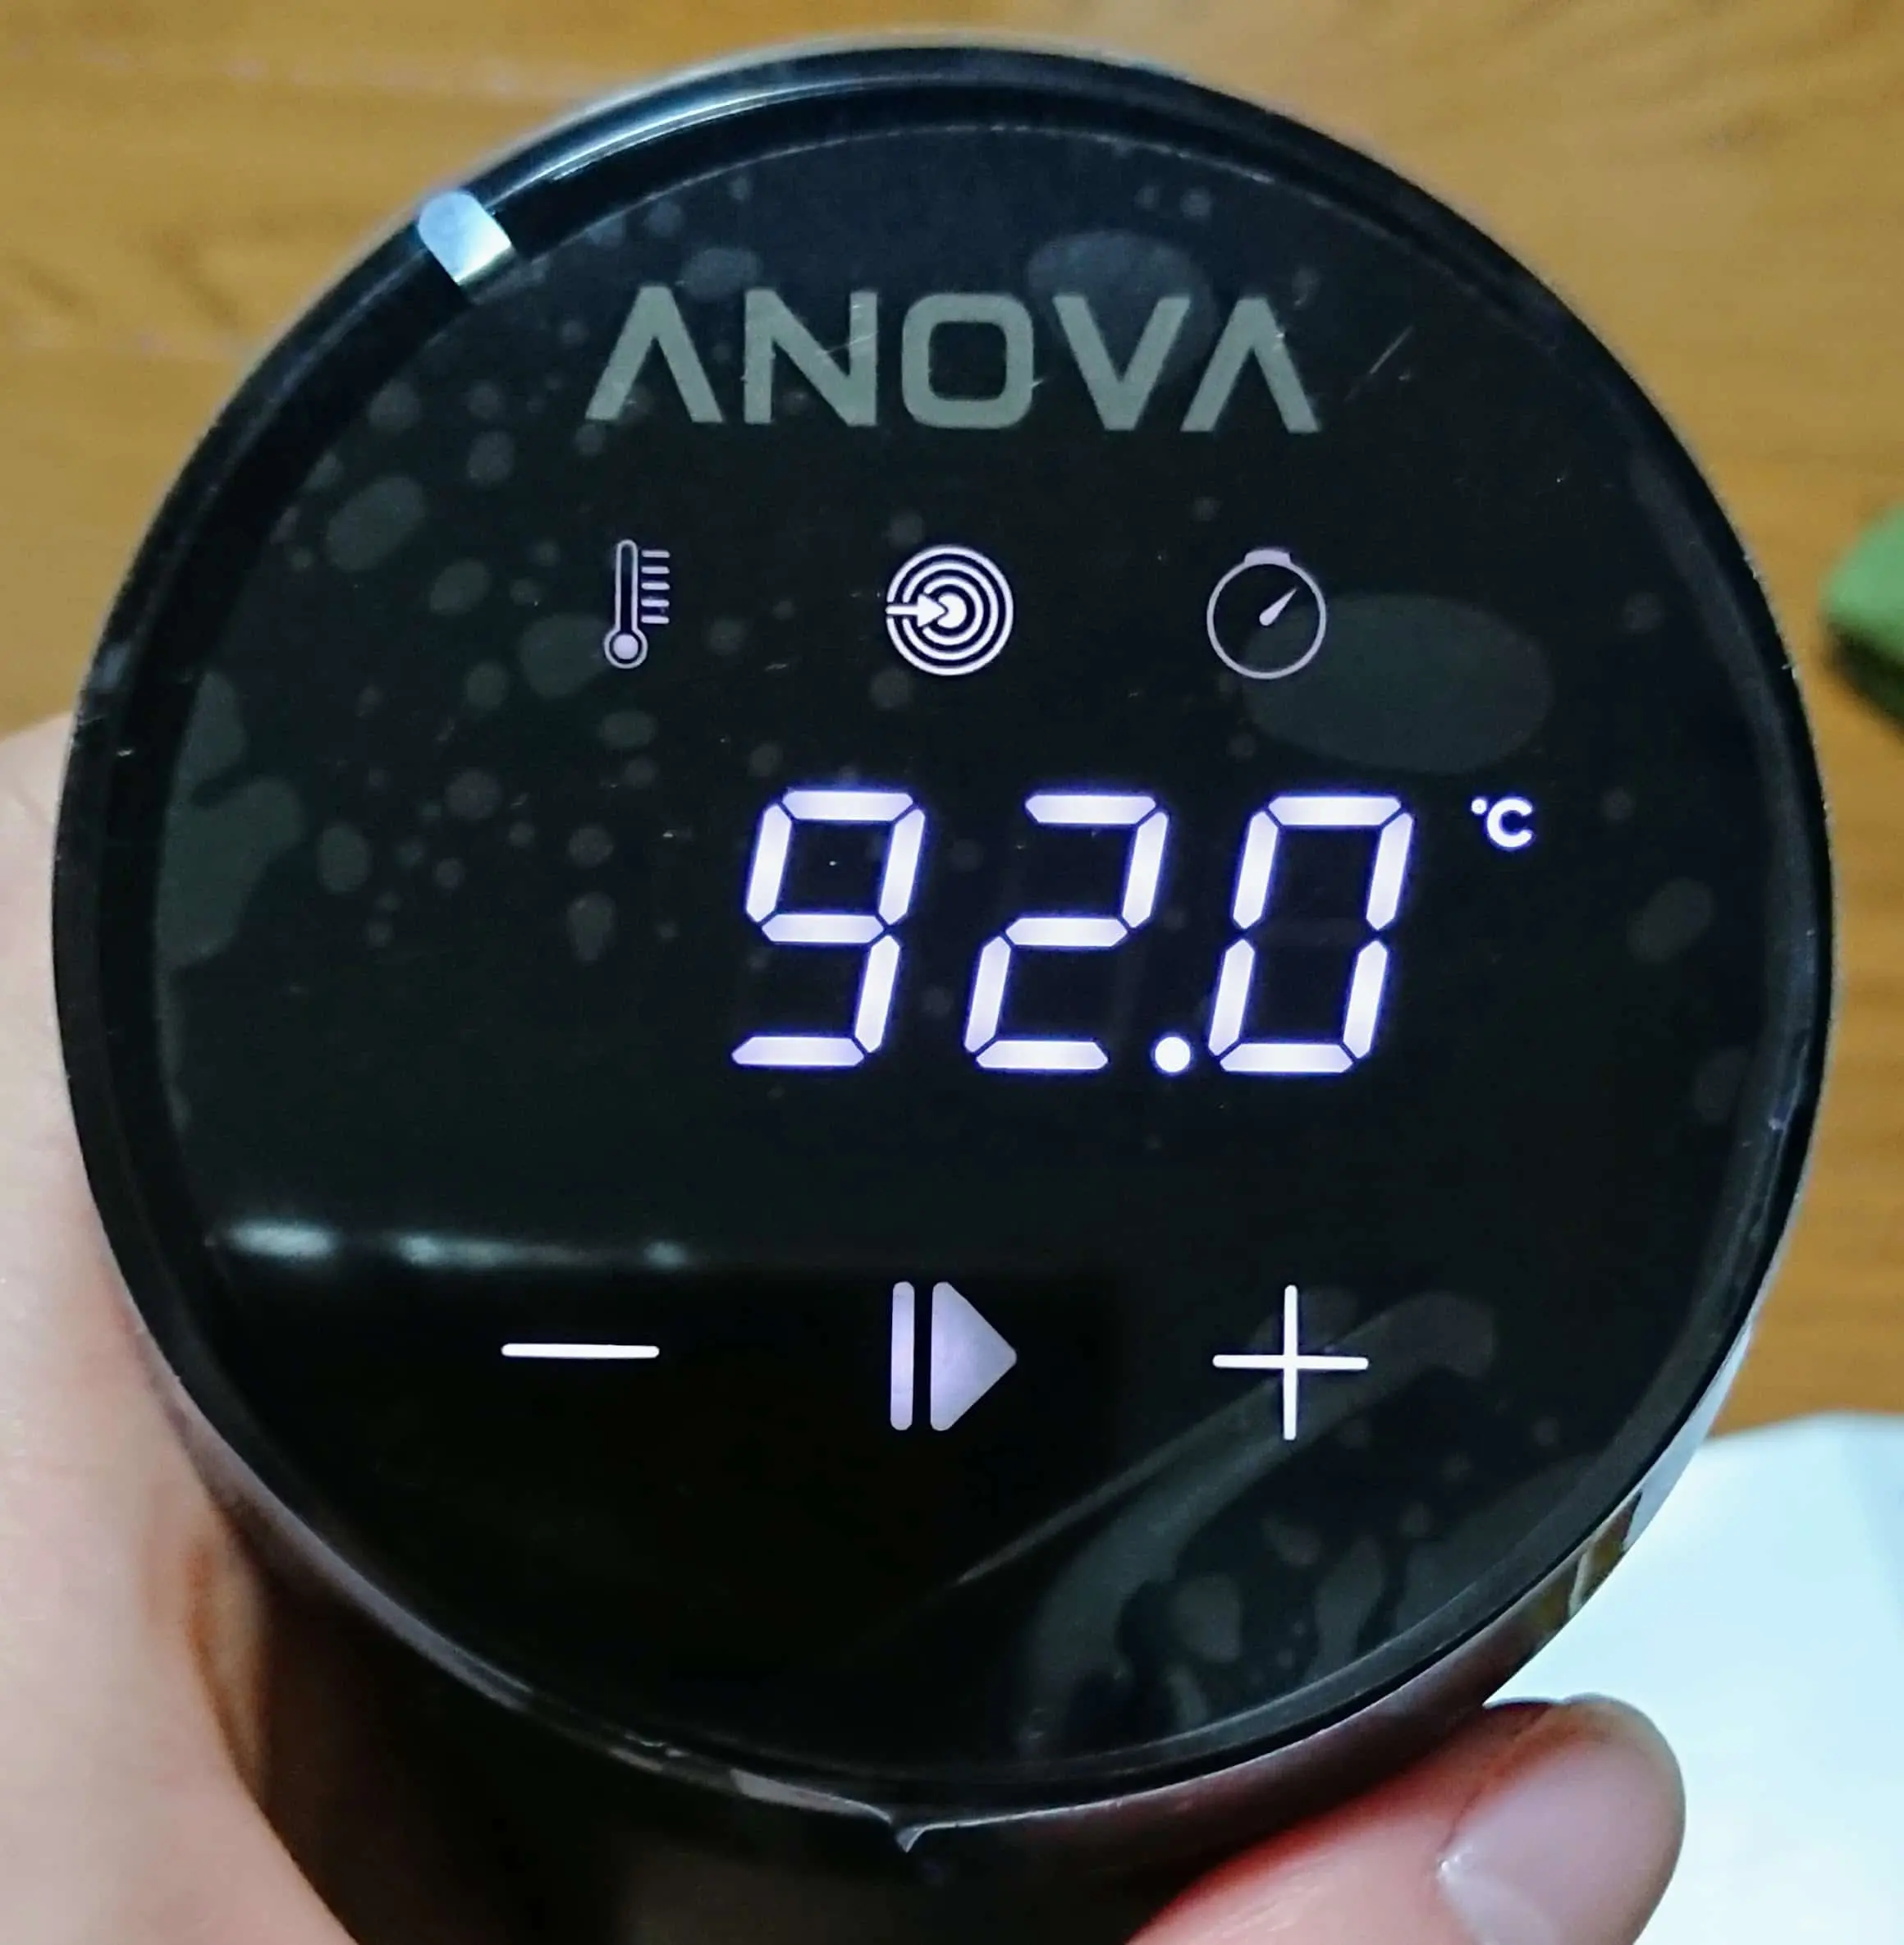 Anova Nanoの最高温度 92℃